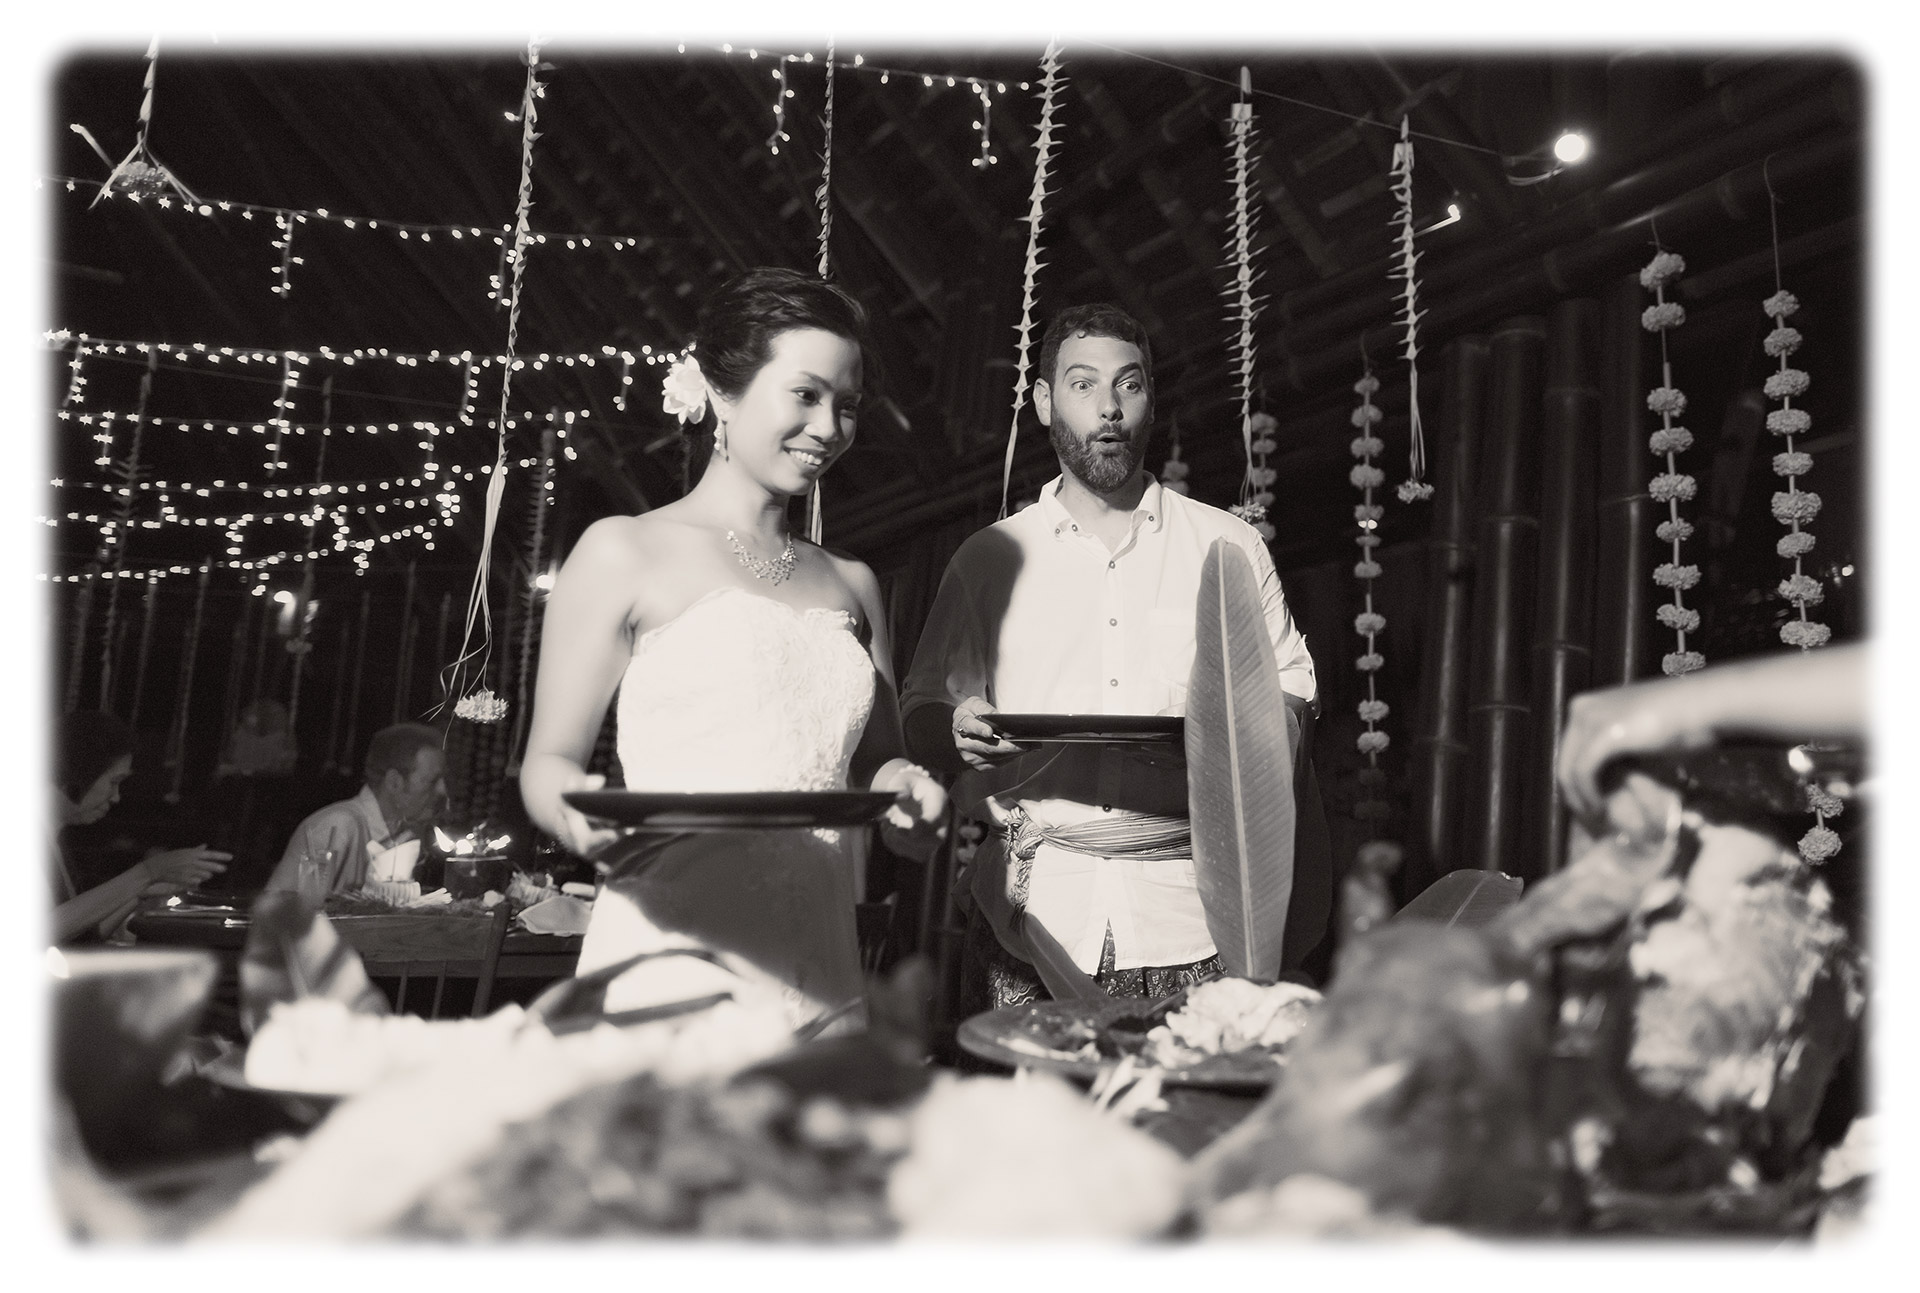 巴厘岛最佳婚礼摄影师